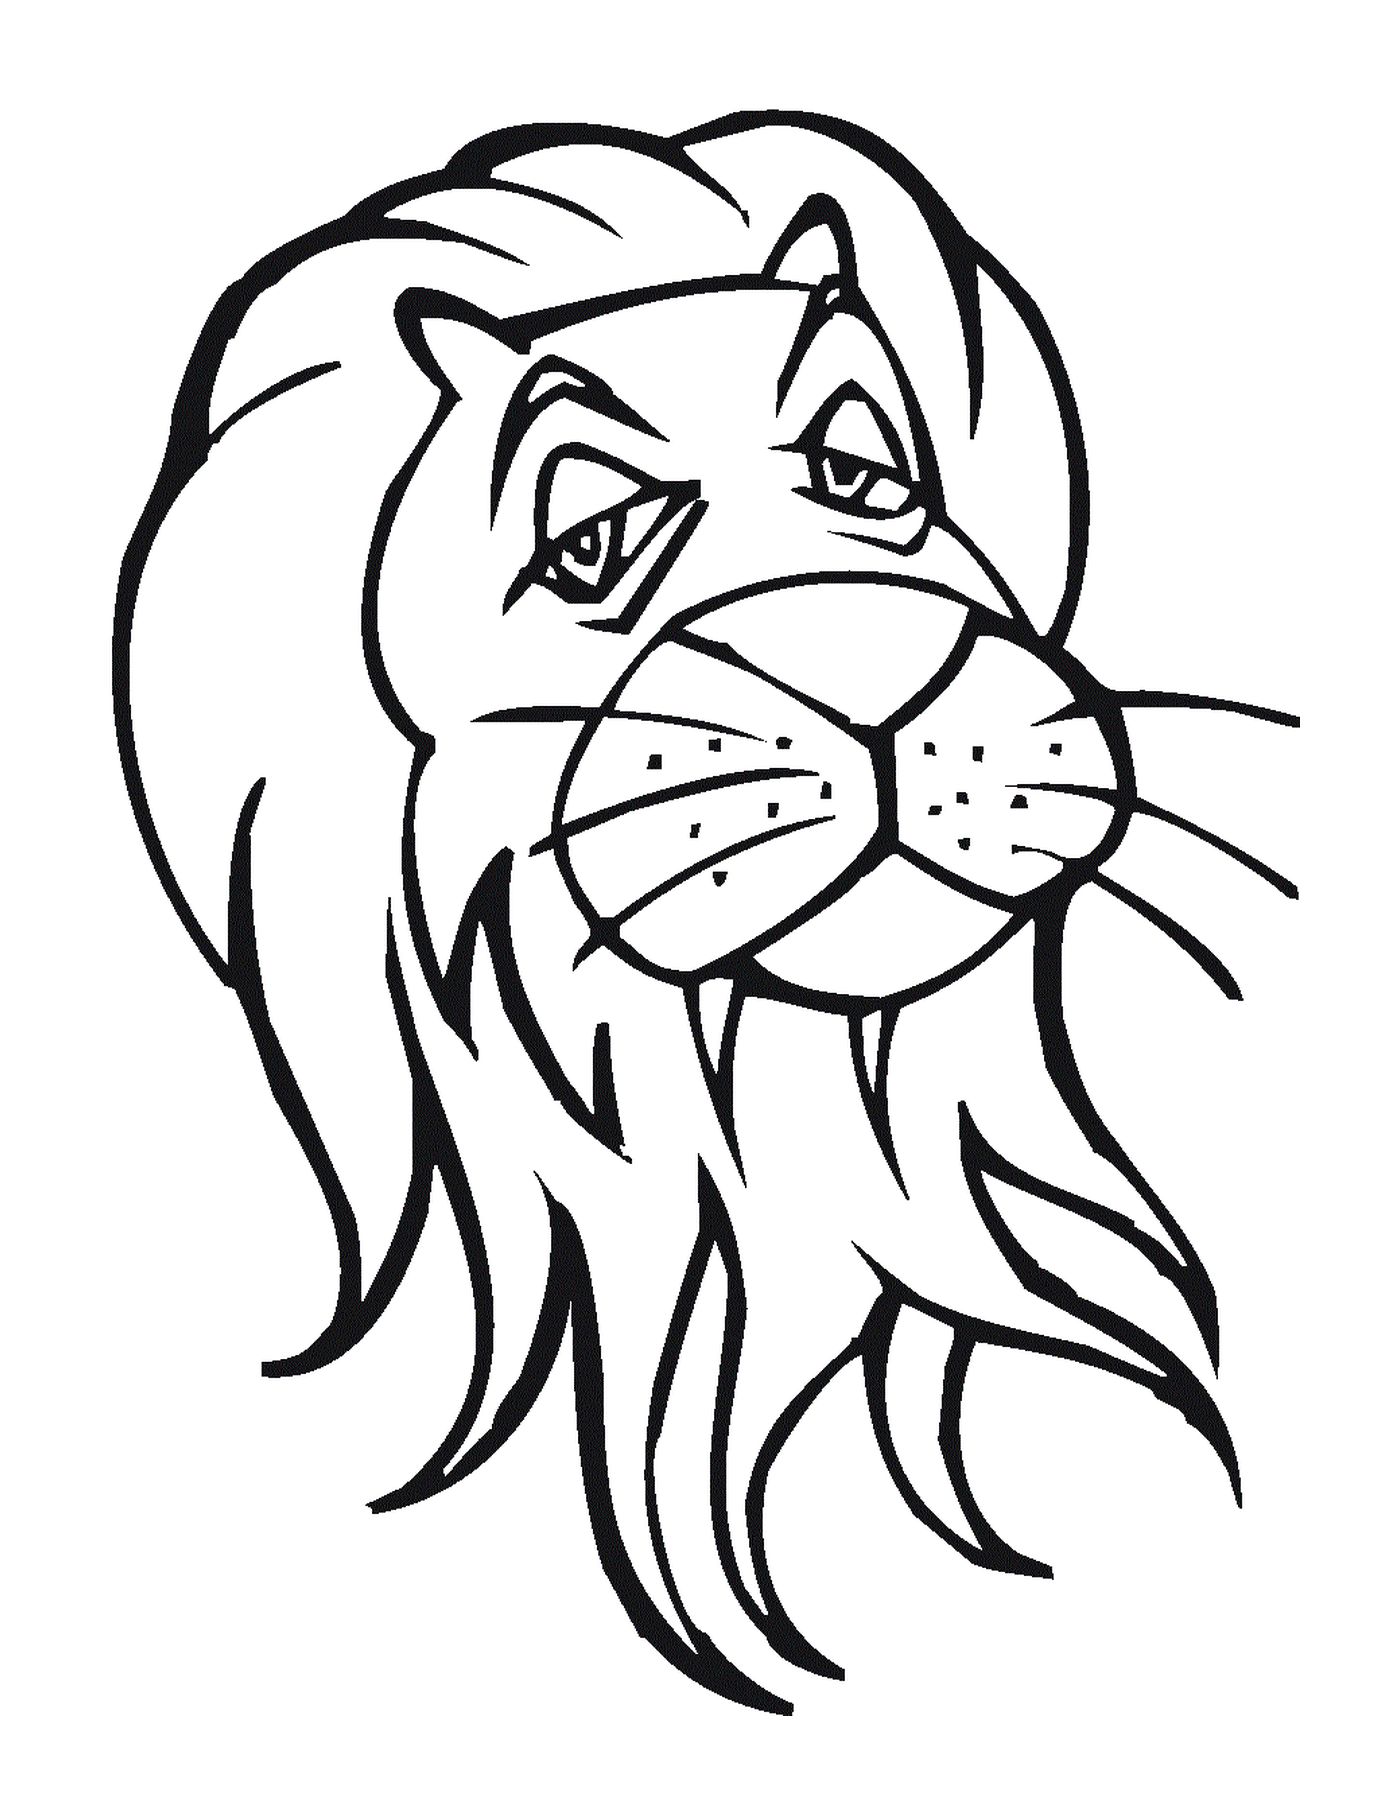  благородная голова льва 